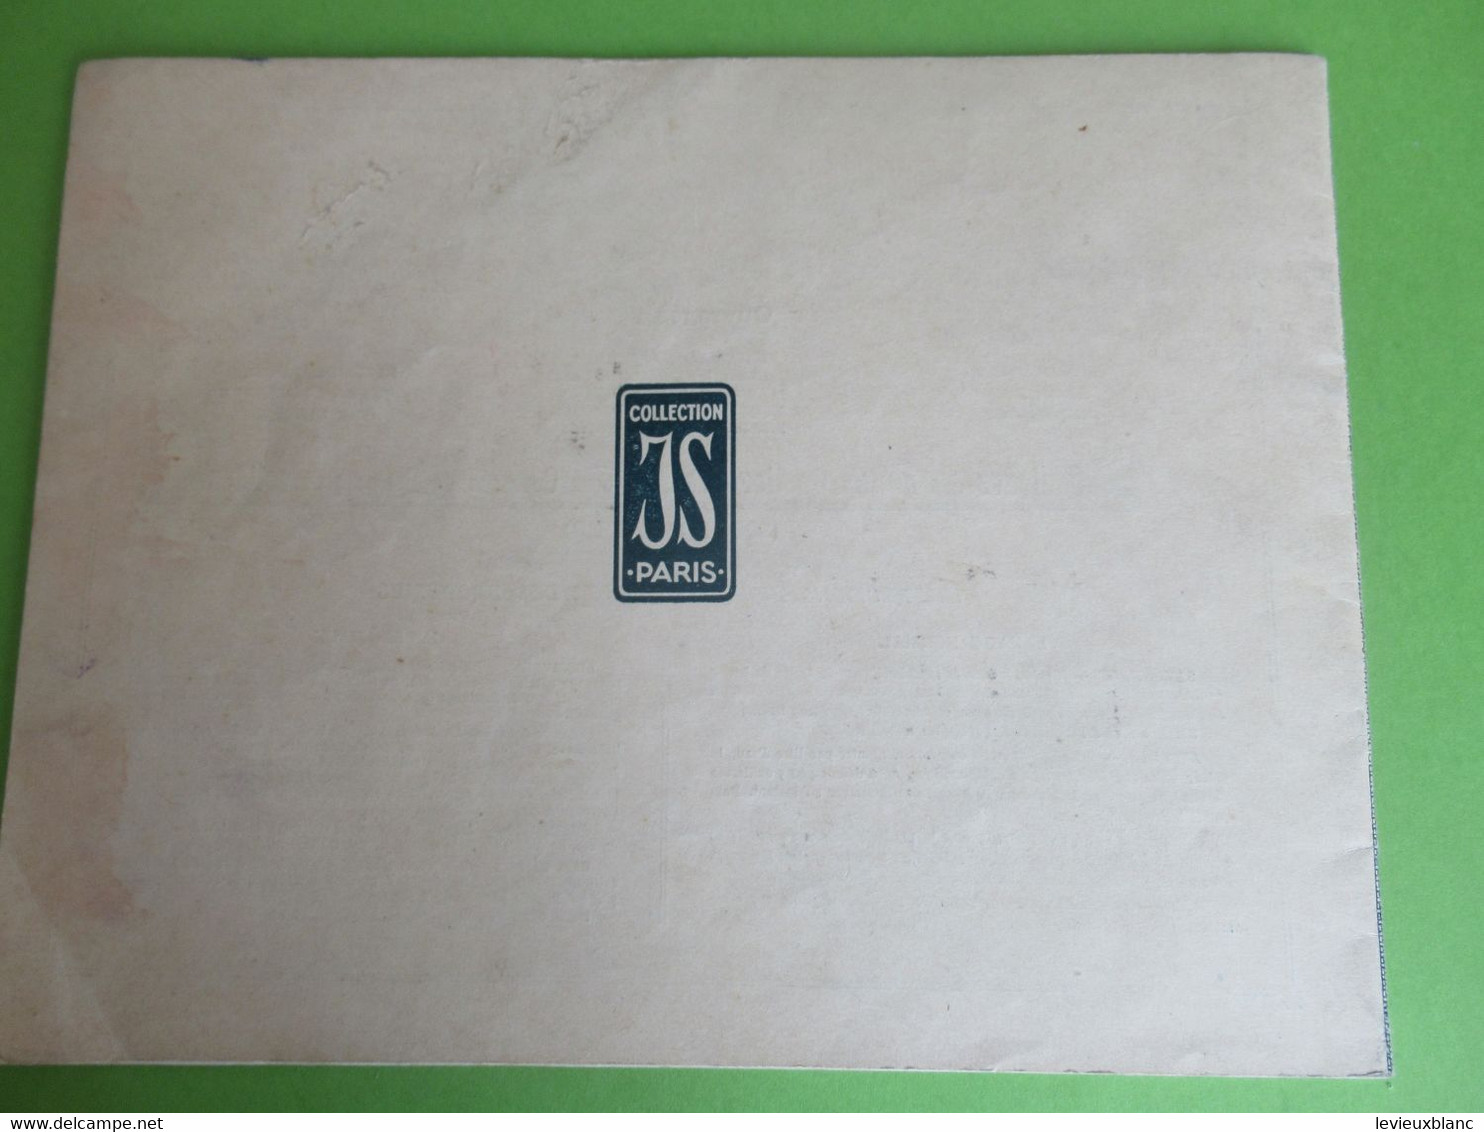 Catalogue/ Les Jours Modernes à Fils Tirés/Collection JS/Album N°2/ CB à La Croix/Vers 1920-1930                   MER73 - Dentelles Et Tissus